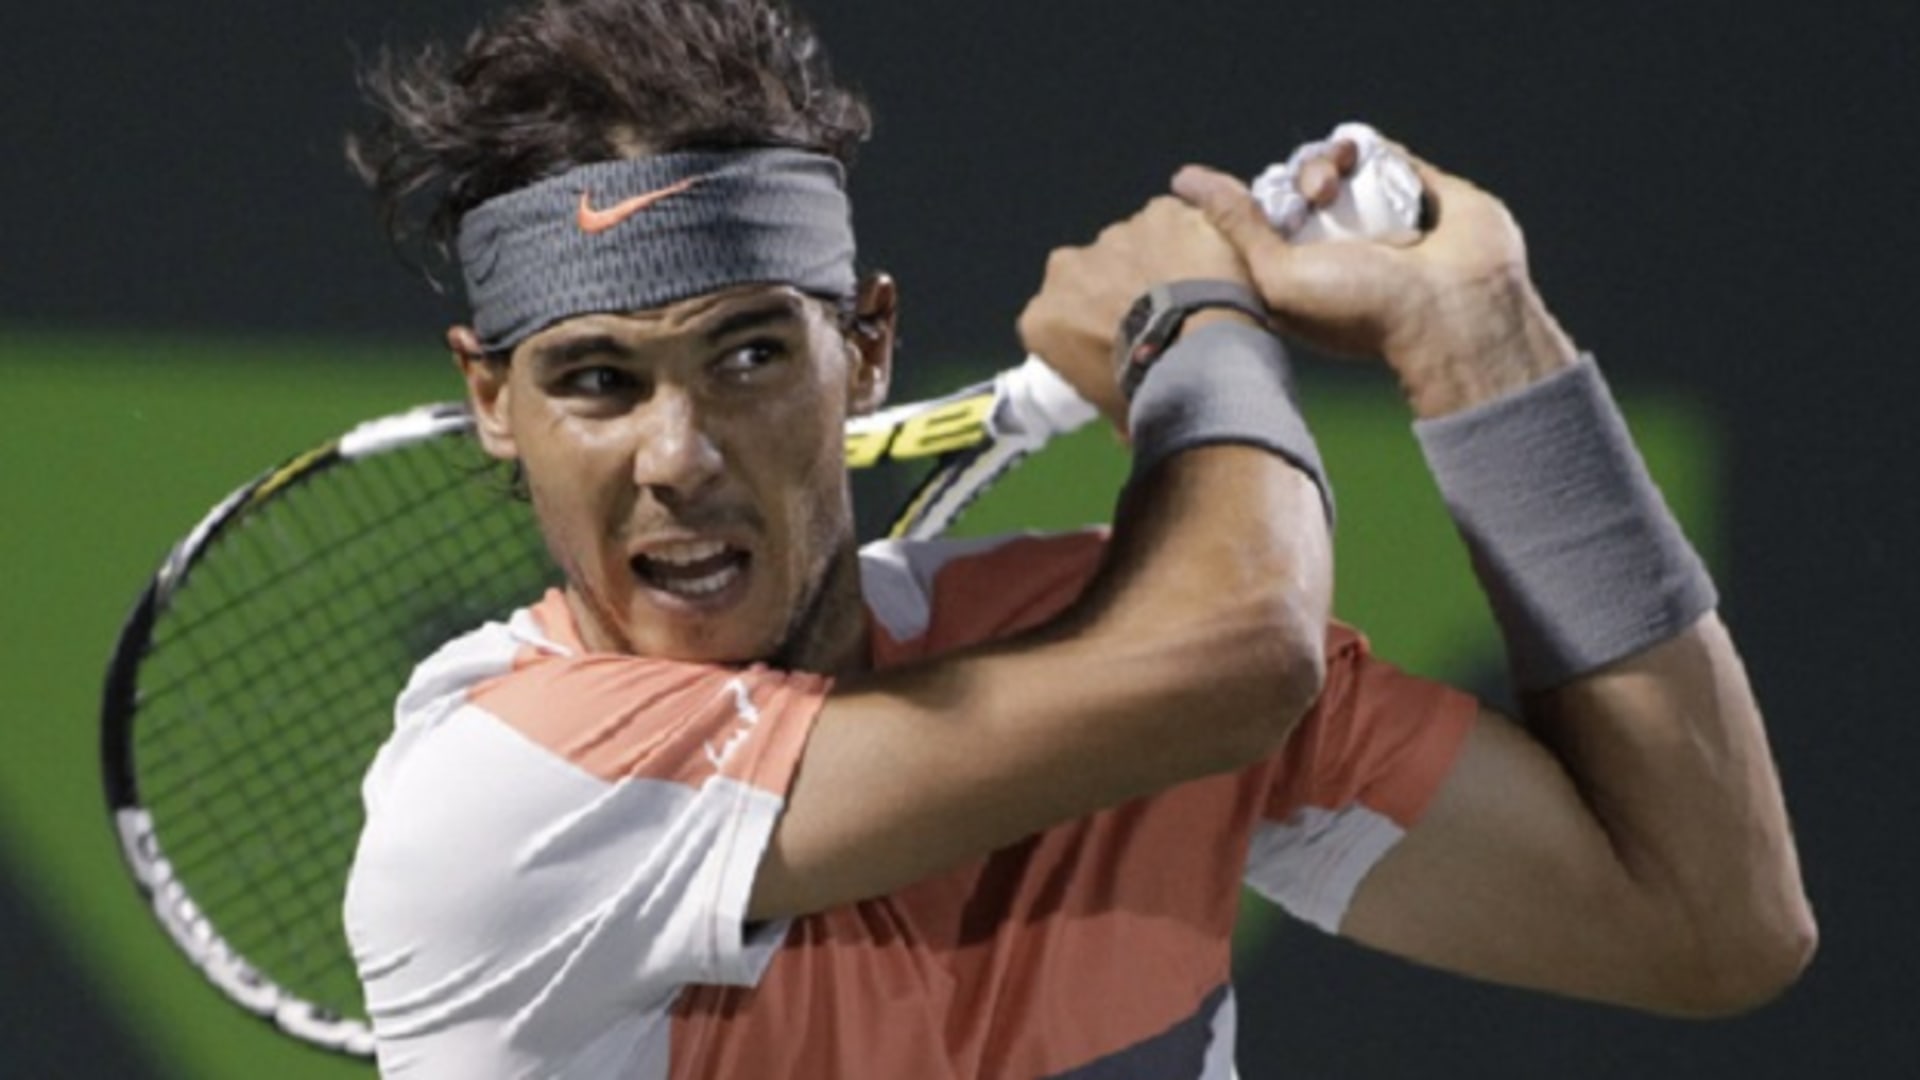 Ordinario Levántate Tulipanes Video: Nadal, Sharapova, and Dimitrov in new Nike spot​